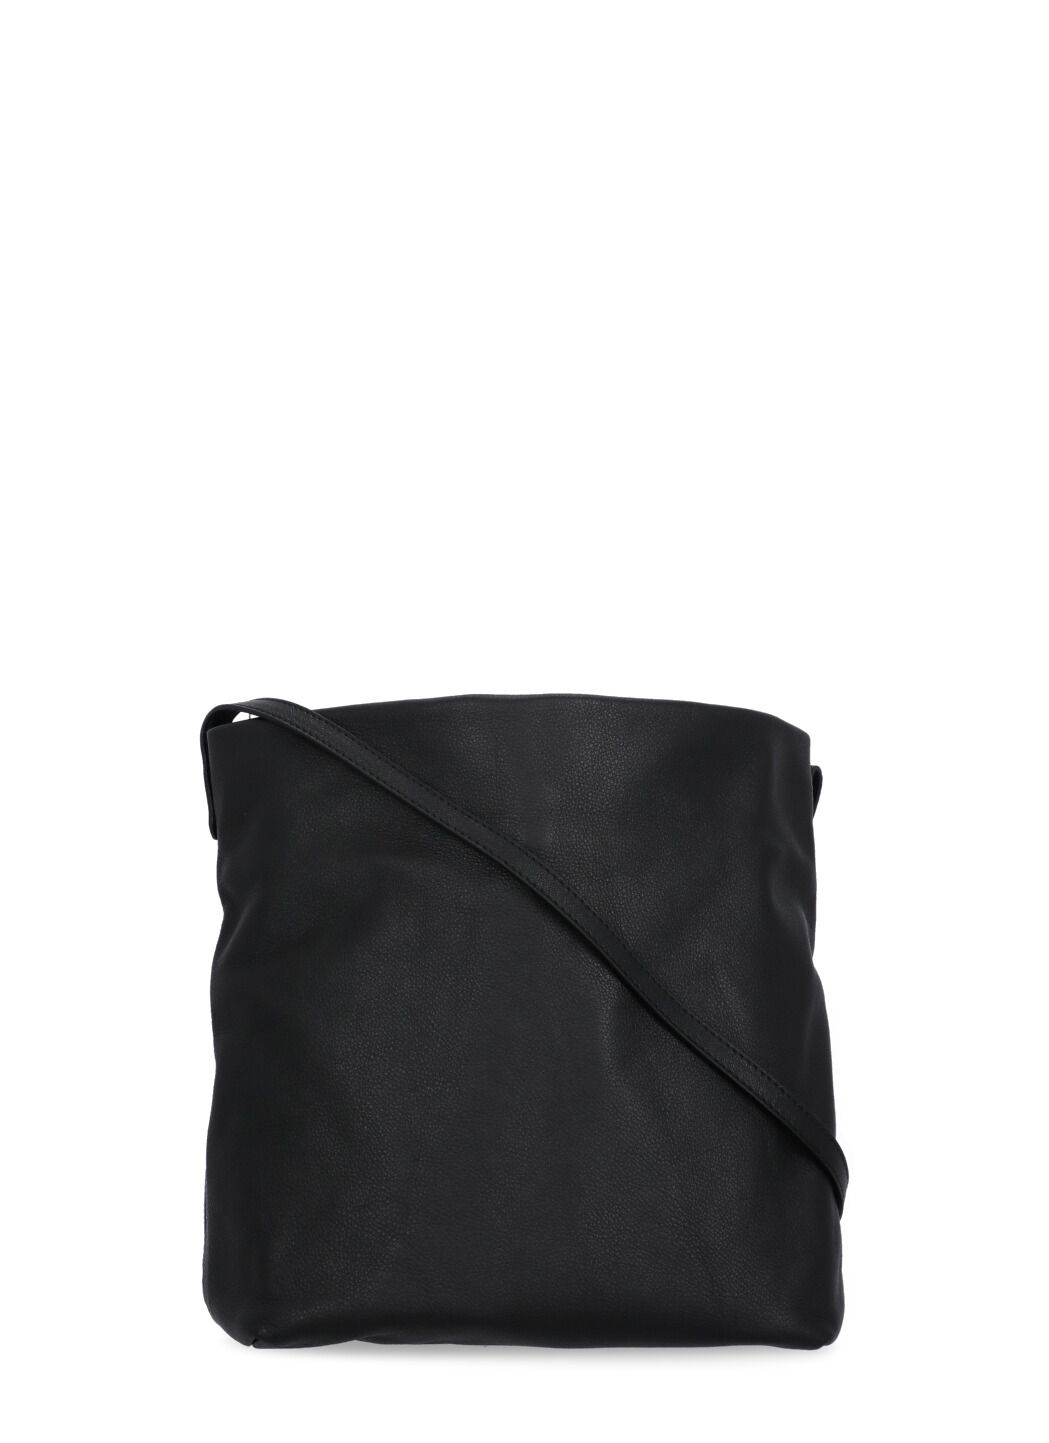 June shoulder bag